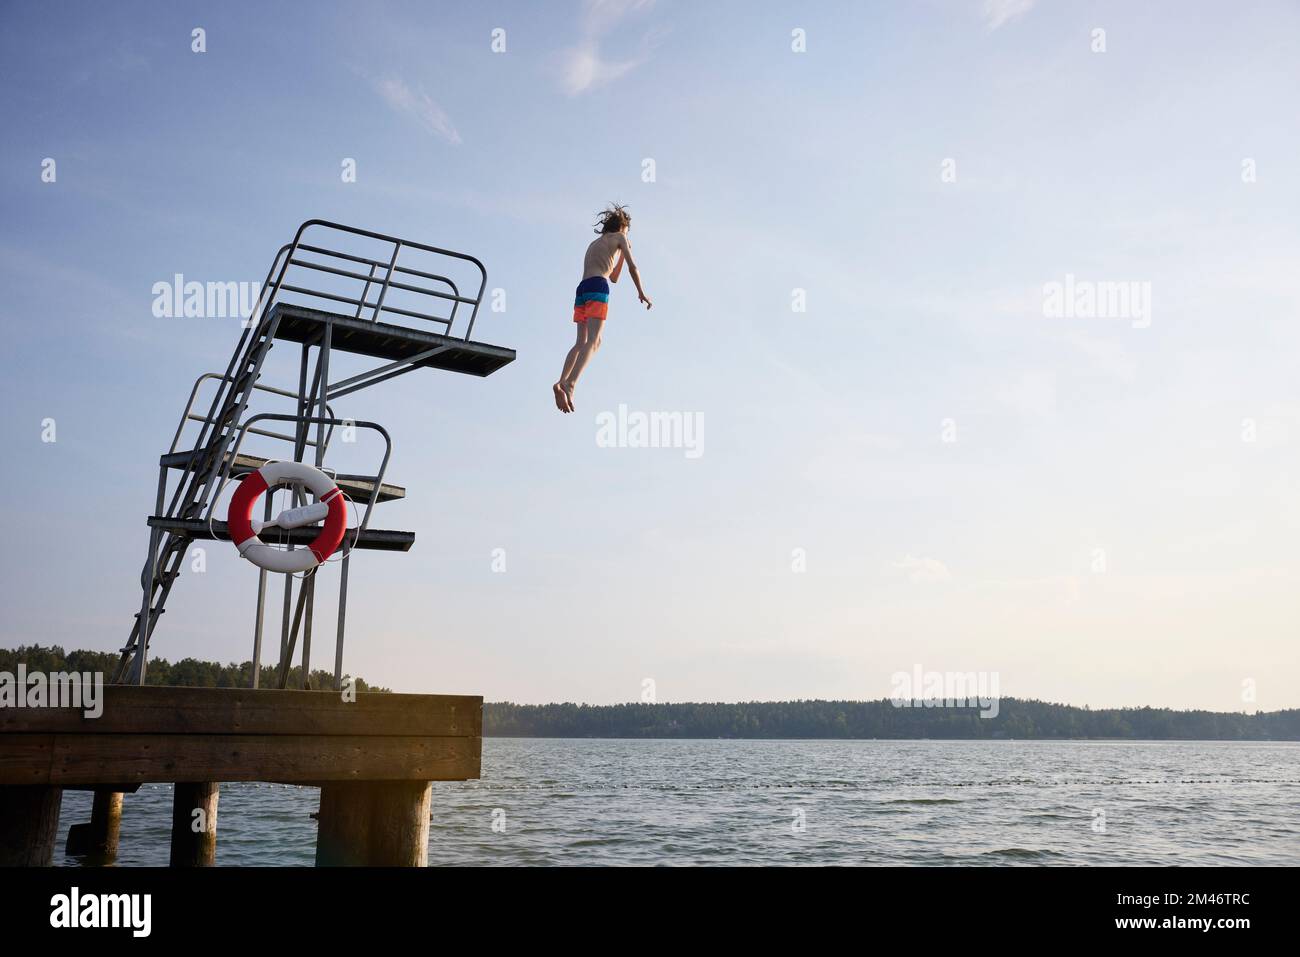 Un adolescent sautant dans l'eau depuis la tour de saut Banque D'Images